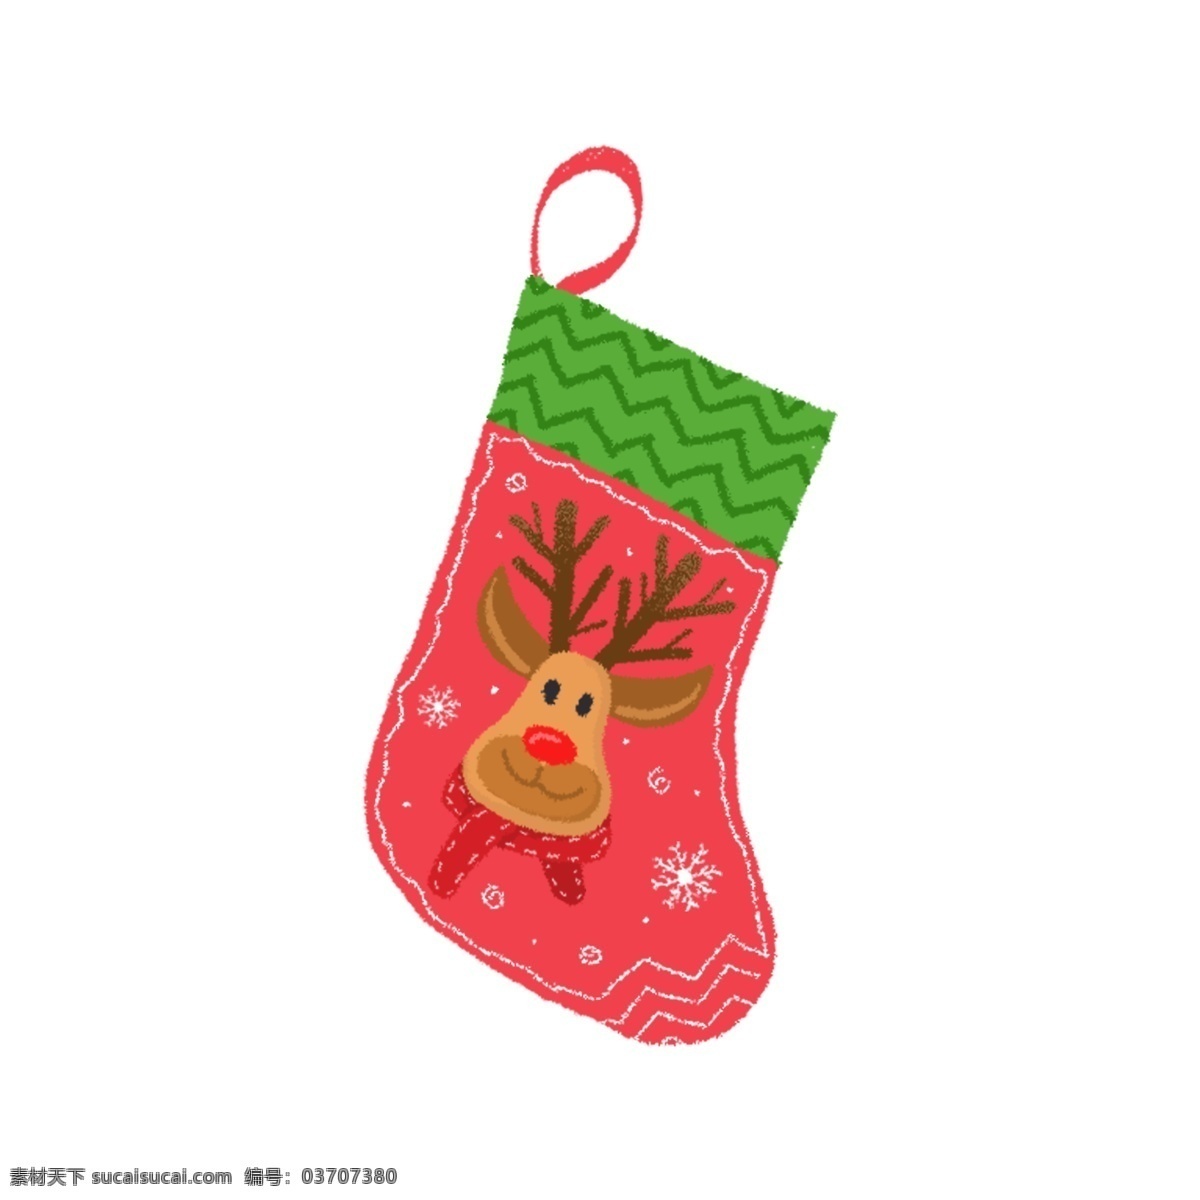 原创 手绘 风 圣诞 麋鹿 手套 袜子 挂件 圣诞节 手绘风 圣诞麋鹿